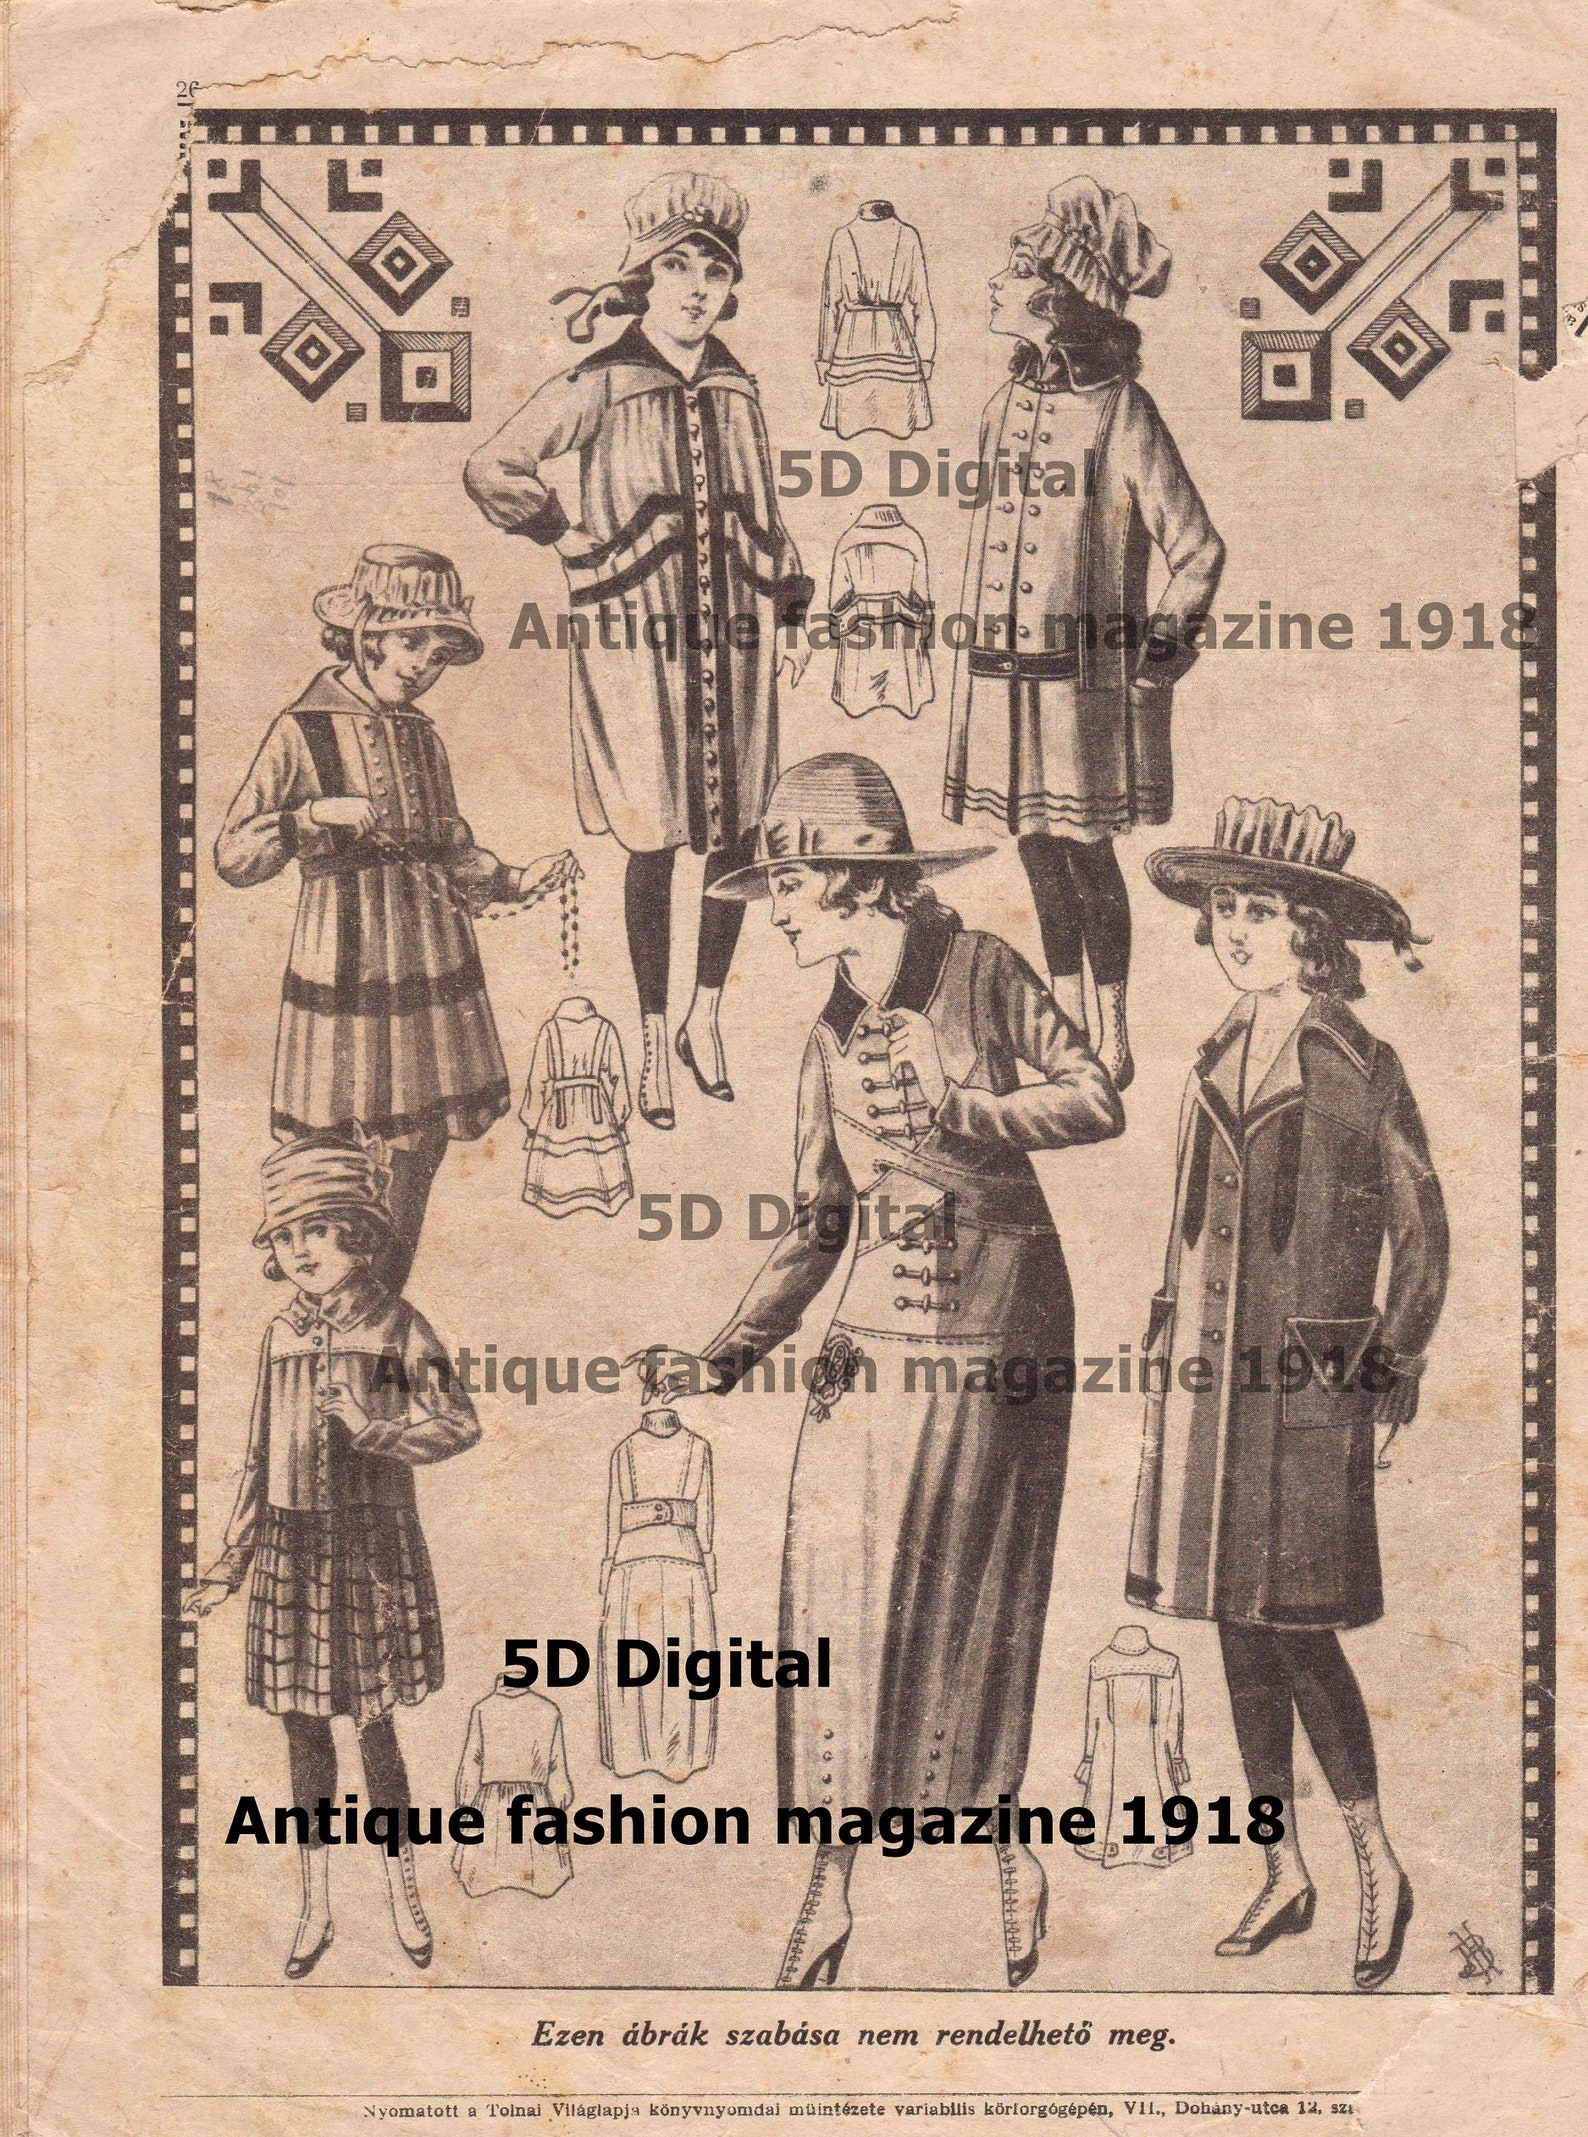 5D. Complete Digital Antique FASHION Magazine/antique Fashion | Etsy